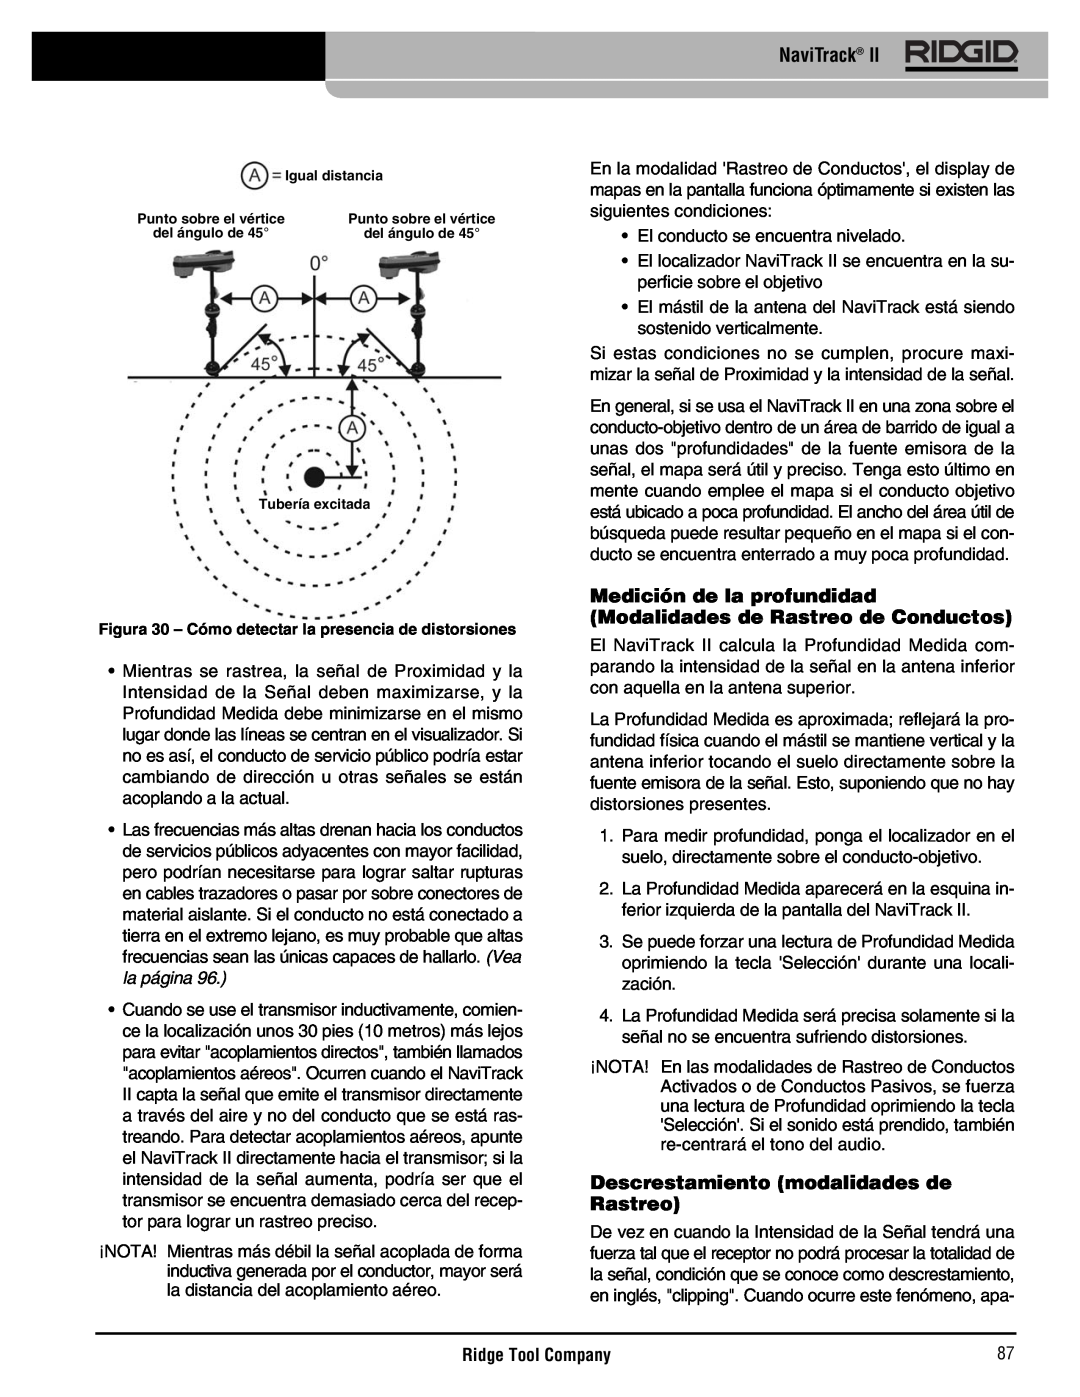 RIDGID Metal Detector manual Medición de la profundidad Modalidades de Rastreo de Conductos, NaviTrack, Ridge Tool Company 